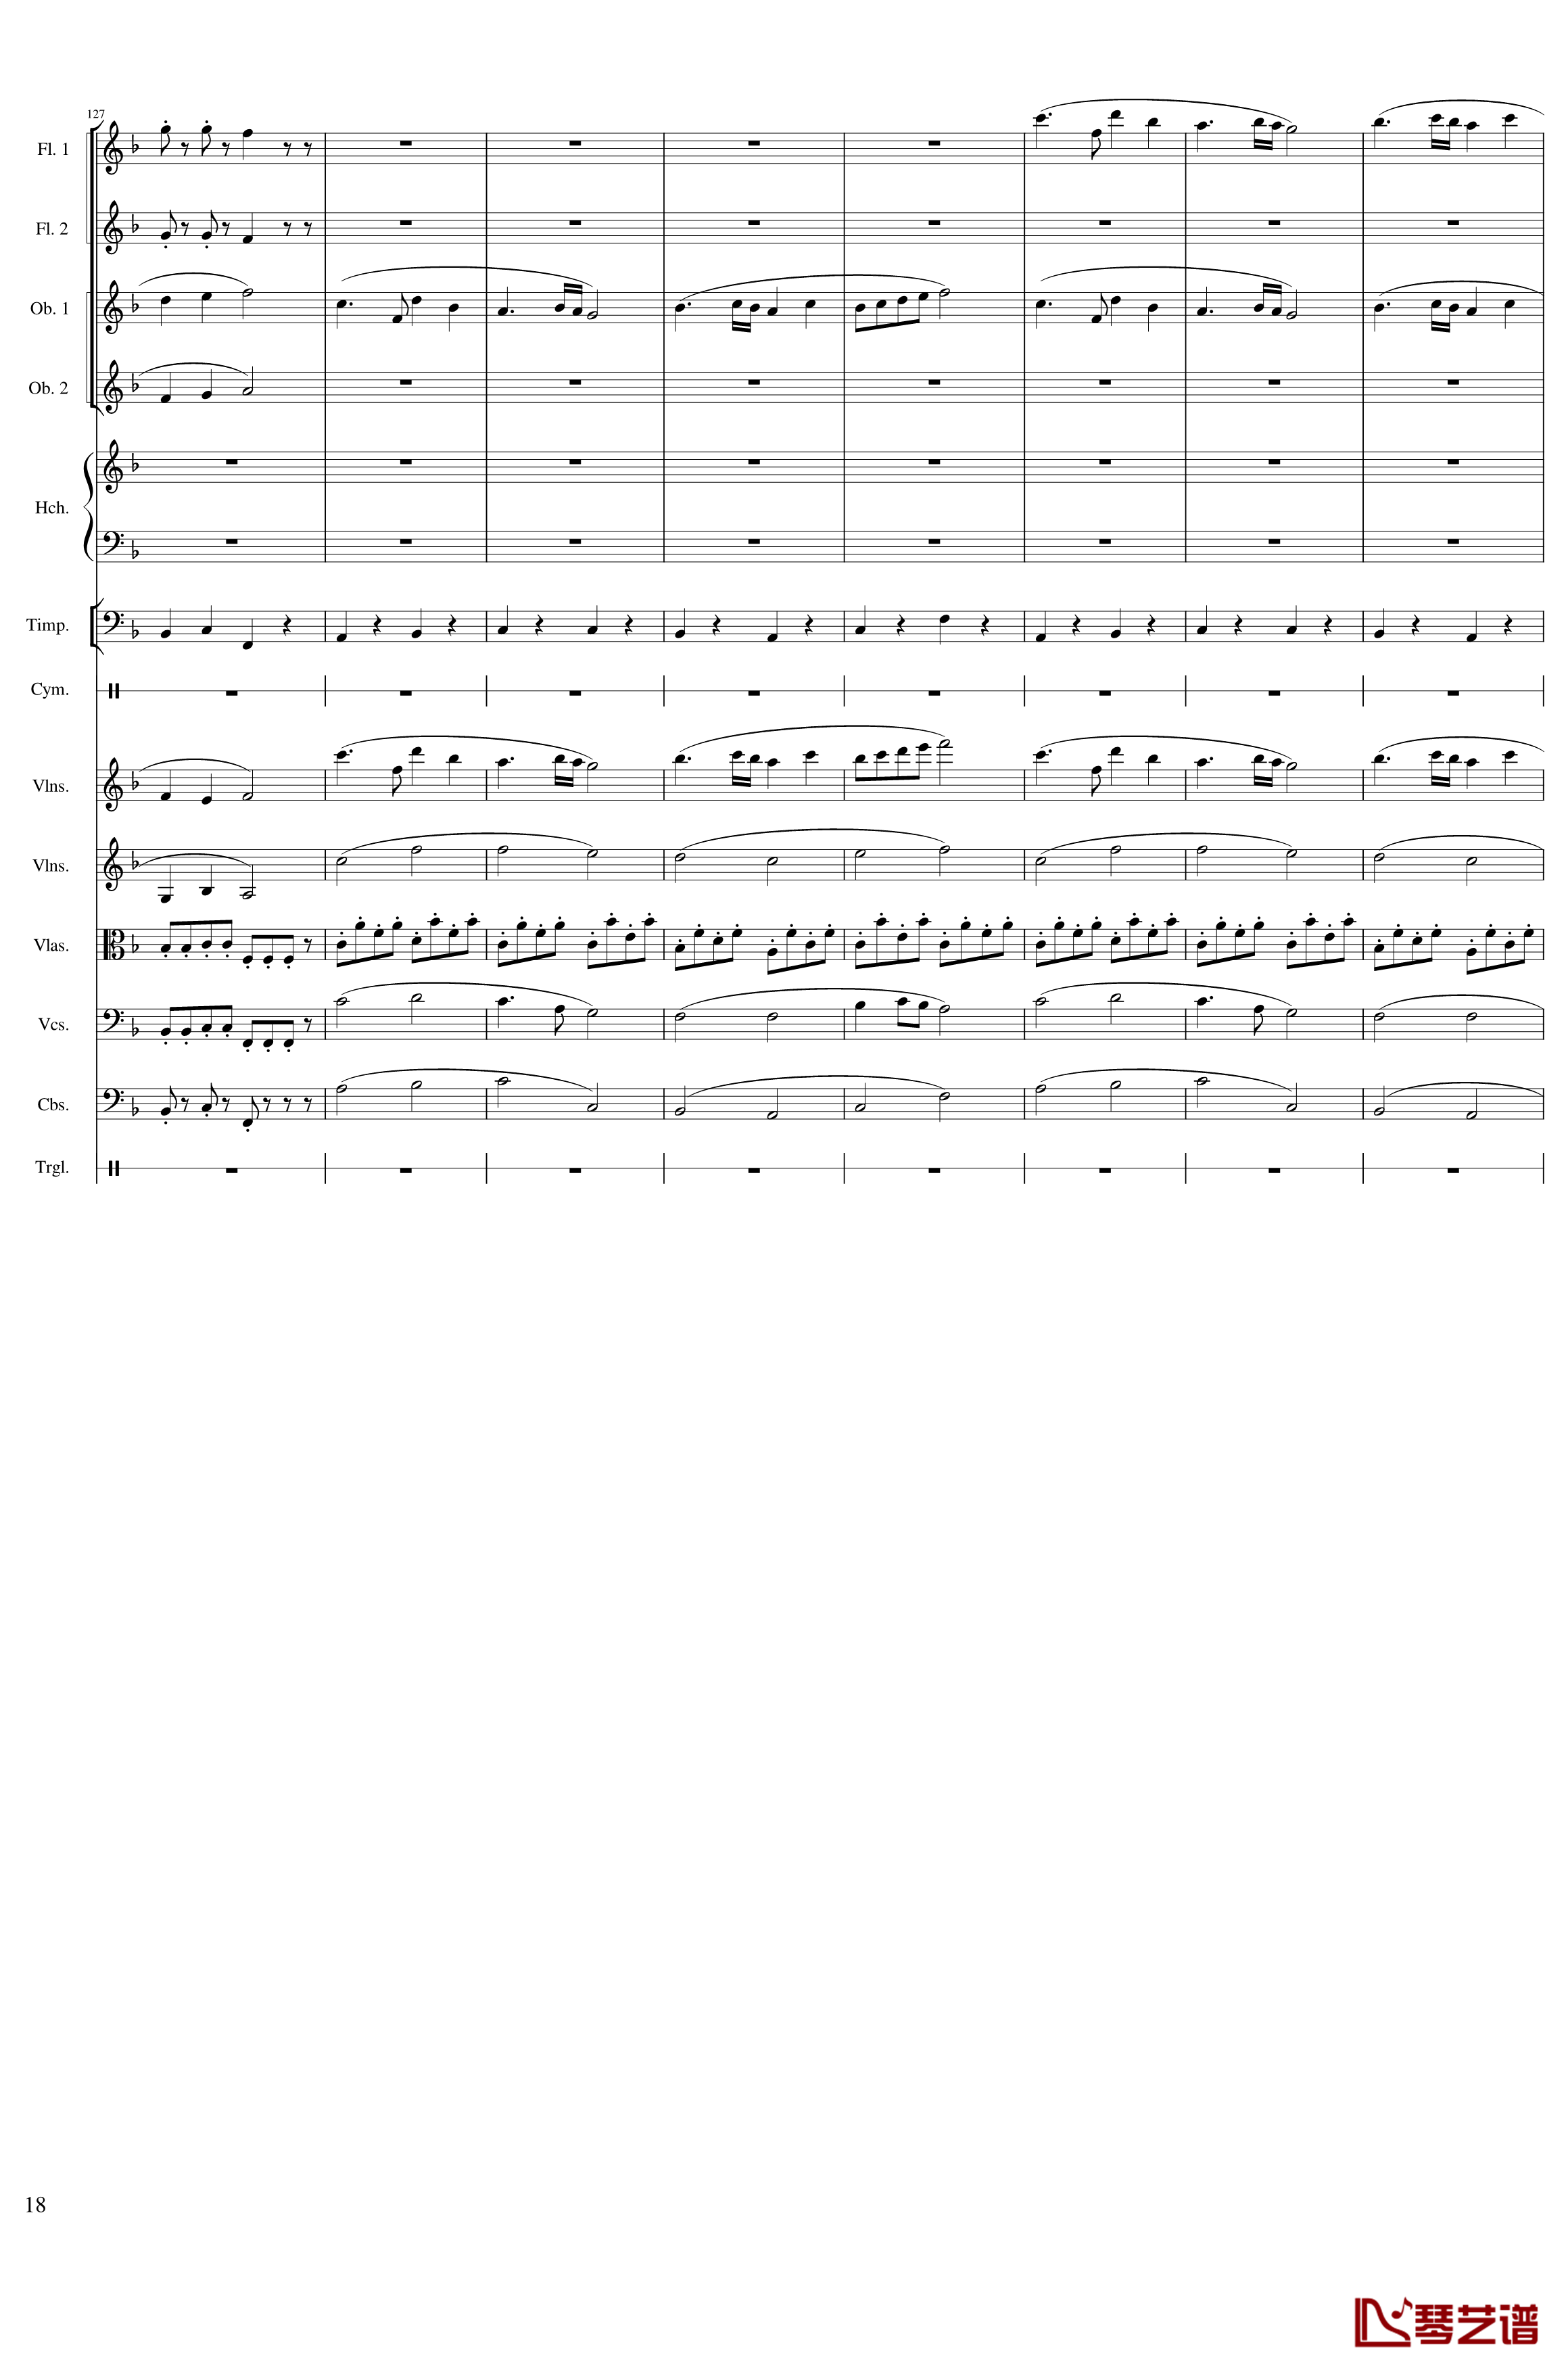 春节序曲钢琴谱-作品121-一个球18